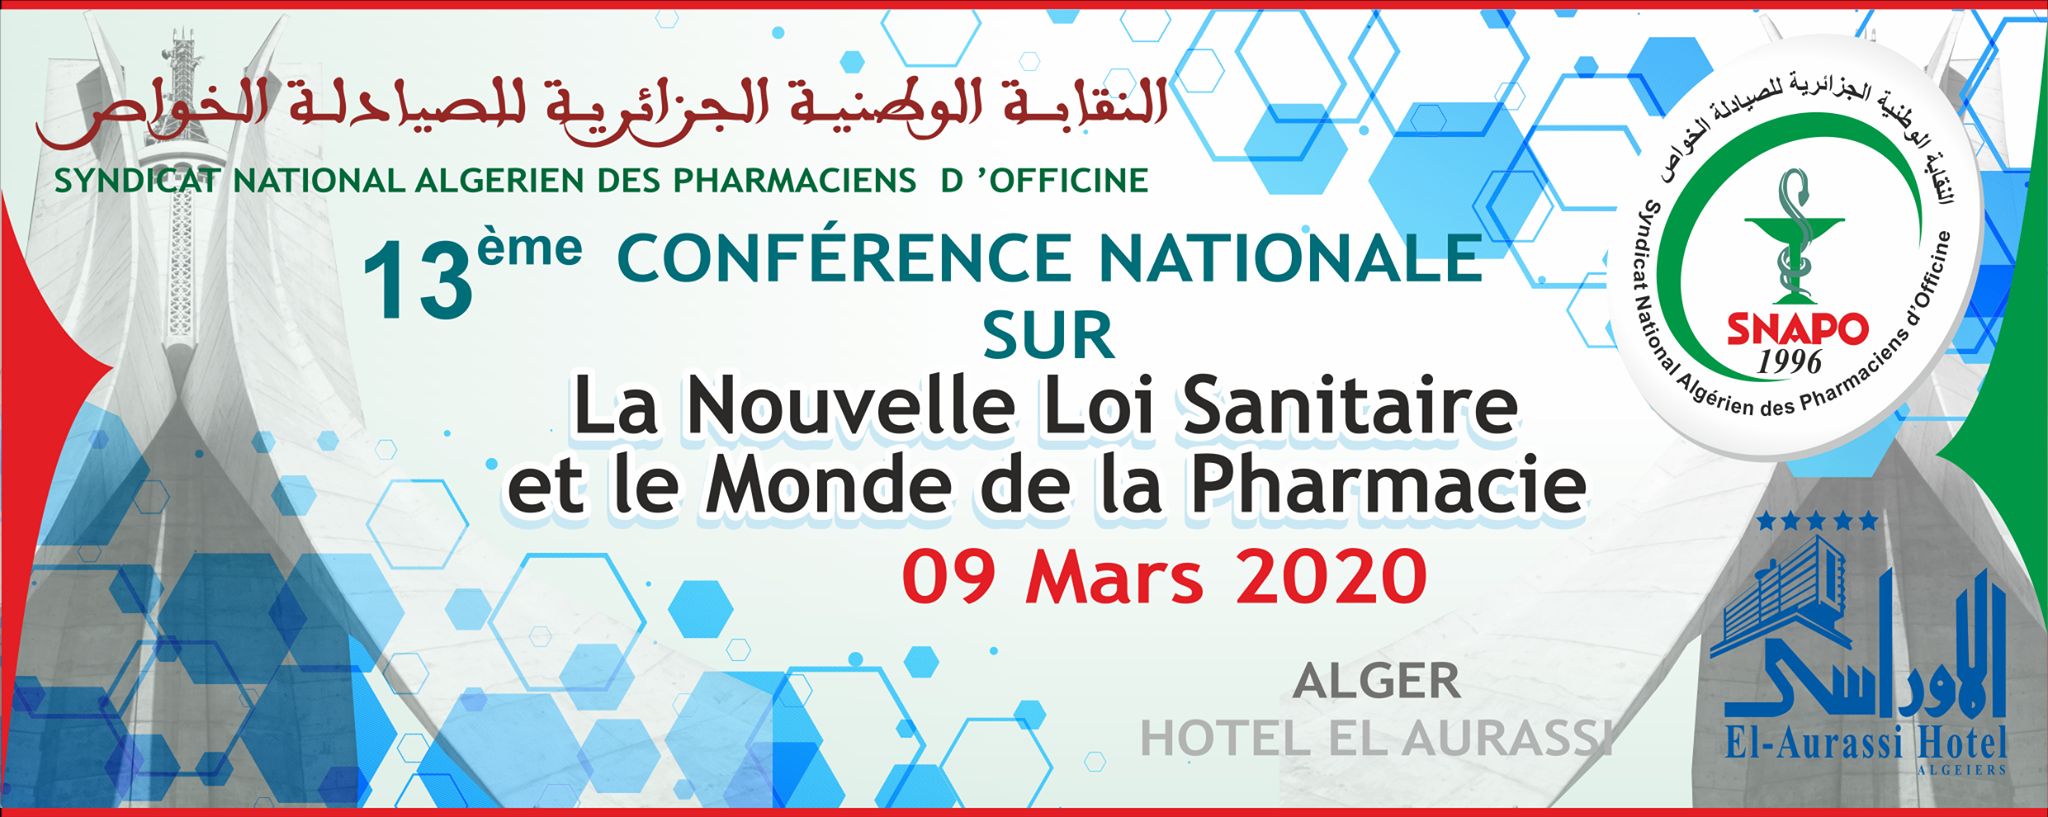 13ème conférence nationale du SNAPO sur la nouvelle loi sanitaire et la mode de la pharmacie - 09 mars à - Alger affiche